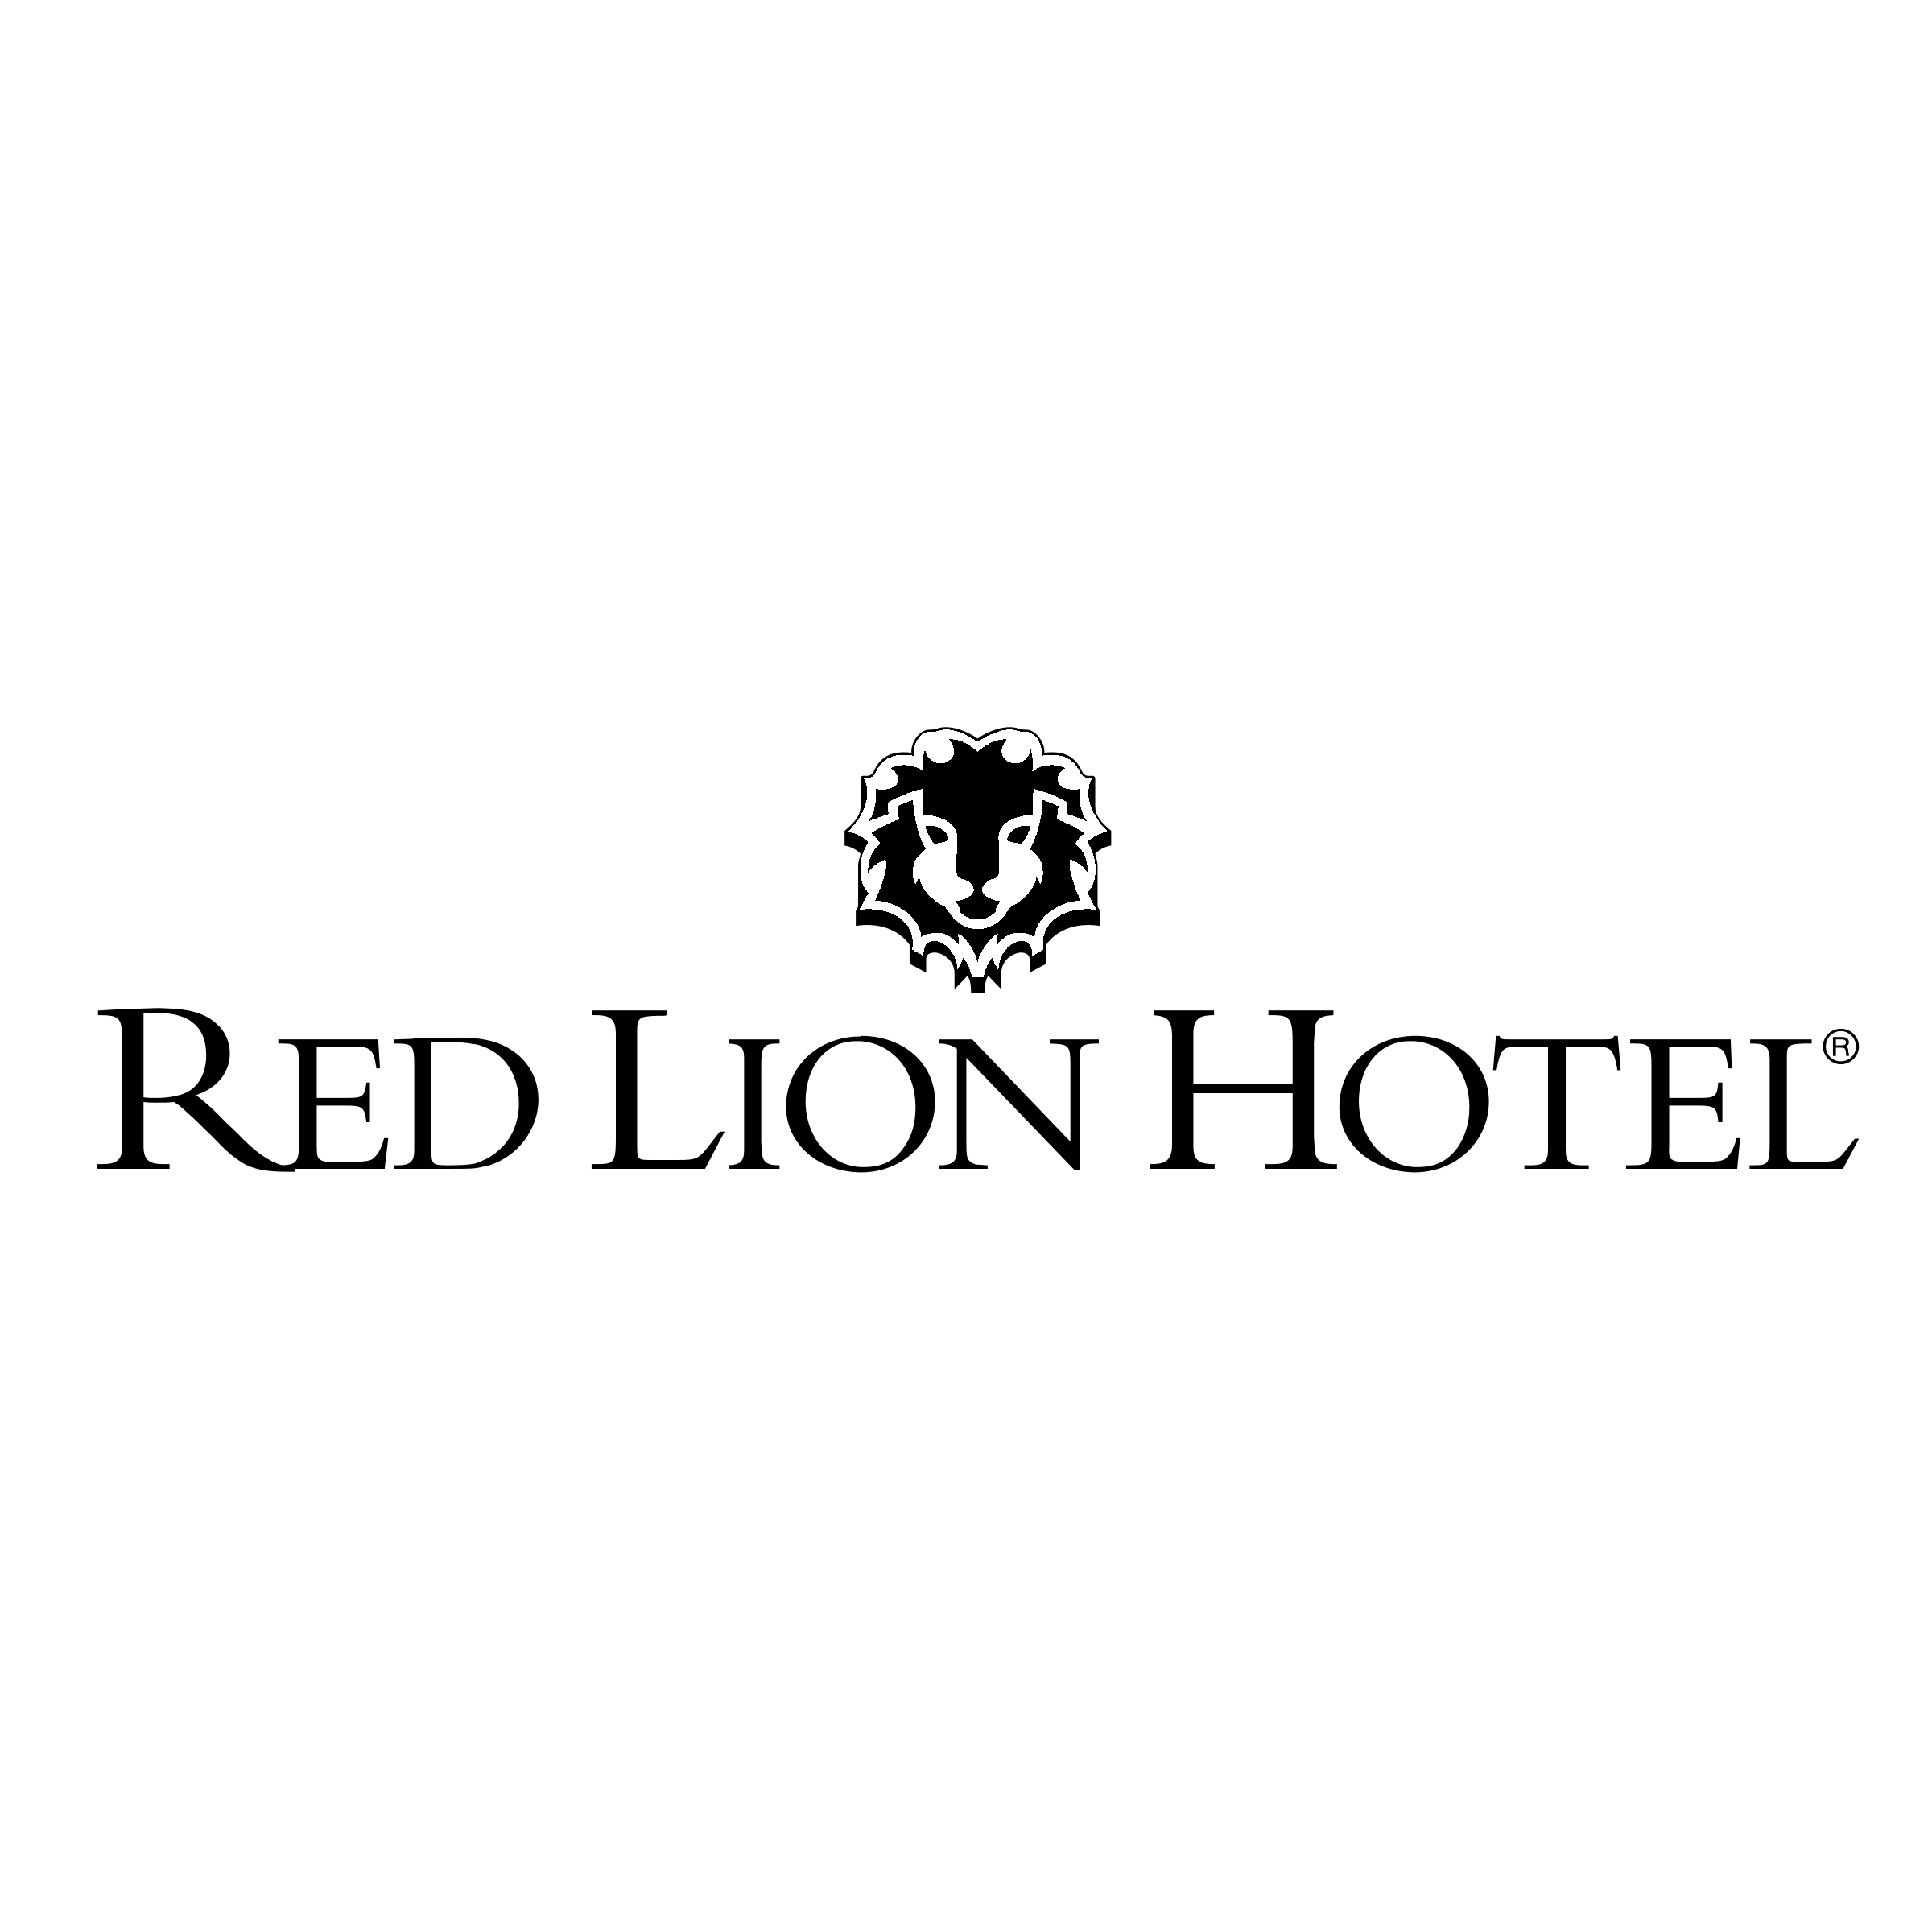 Black Red Lion Hotel Logo - Red Lion Hotel Logo PNG Transparent & SVG Vector